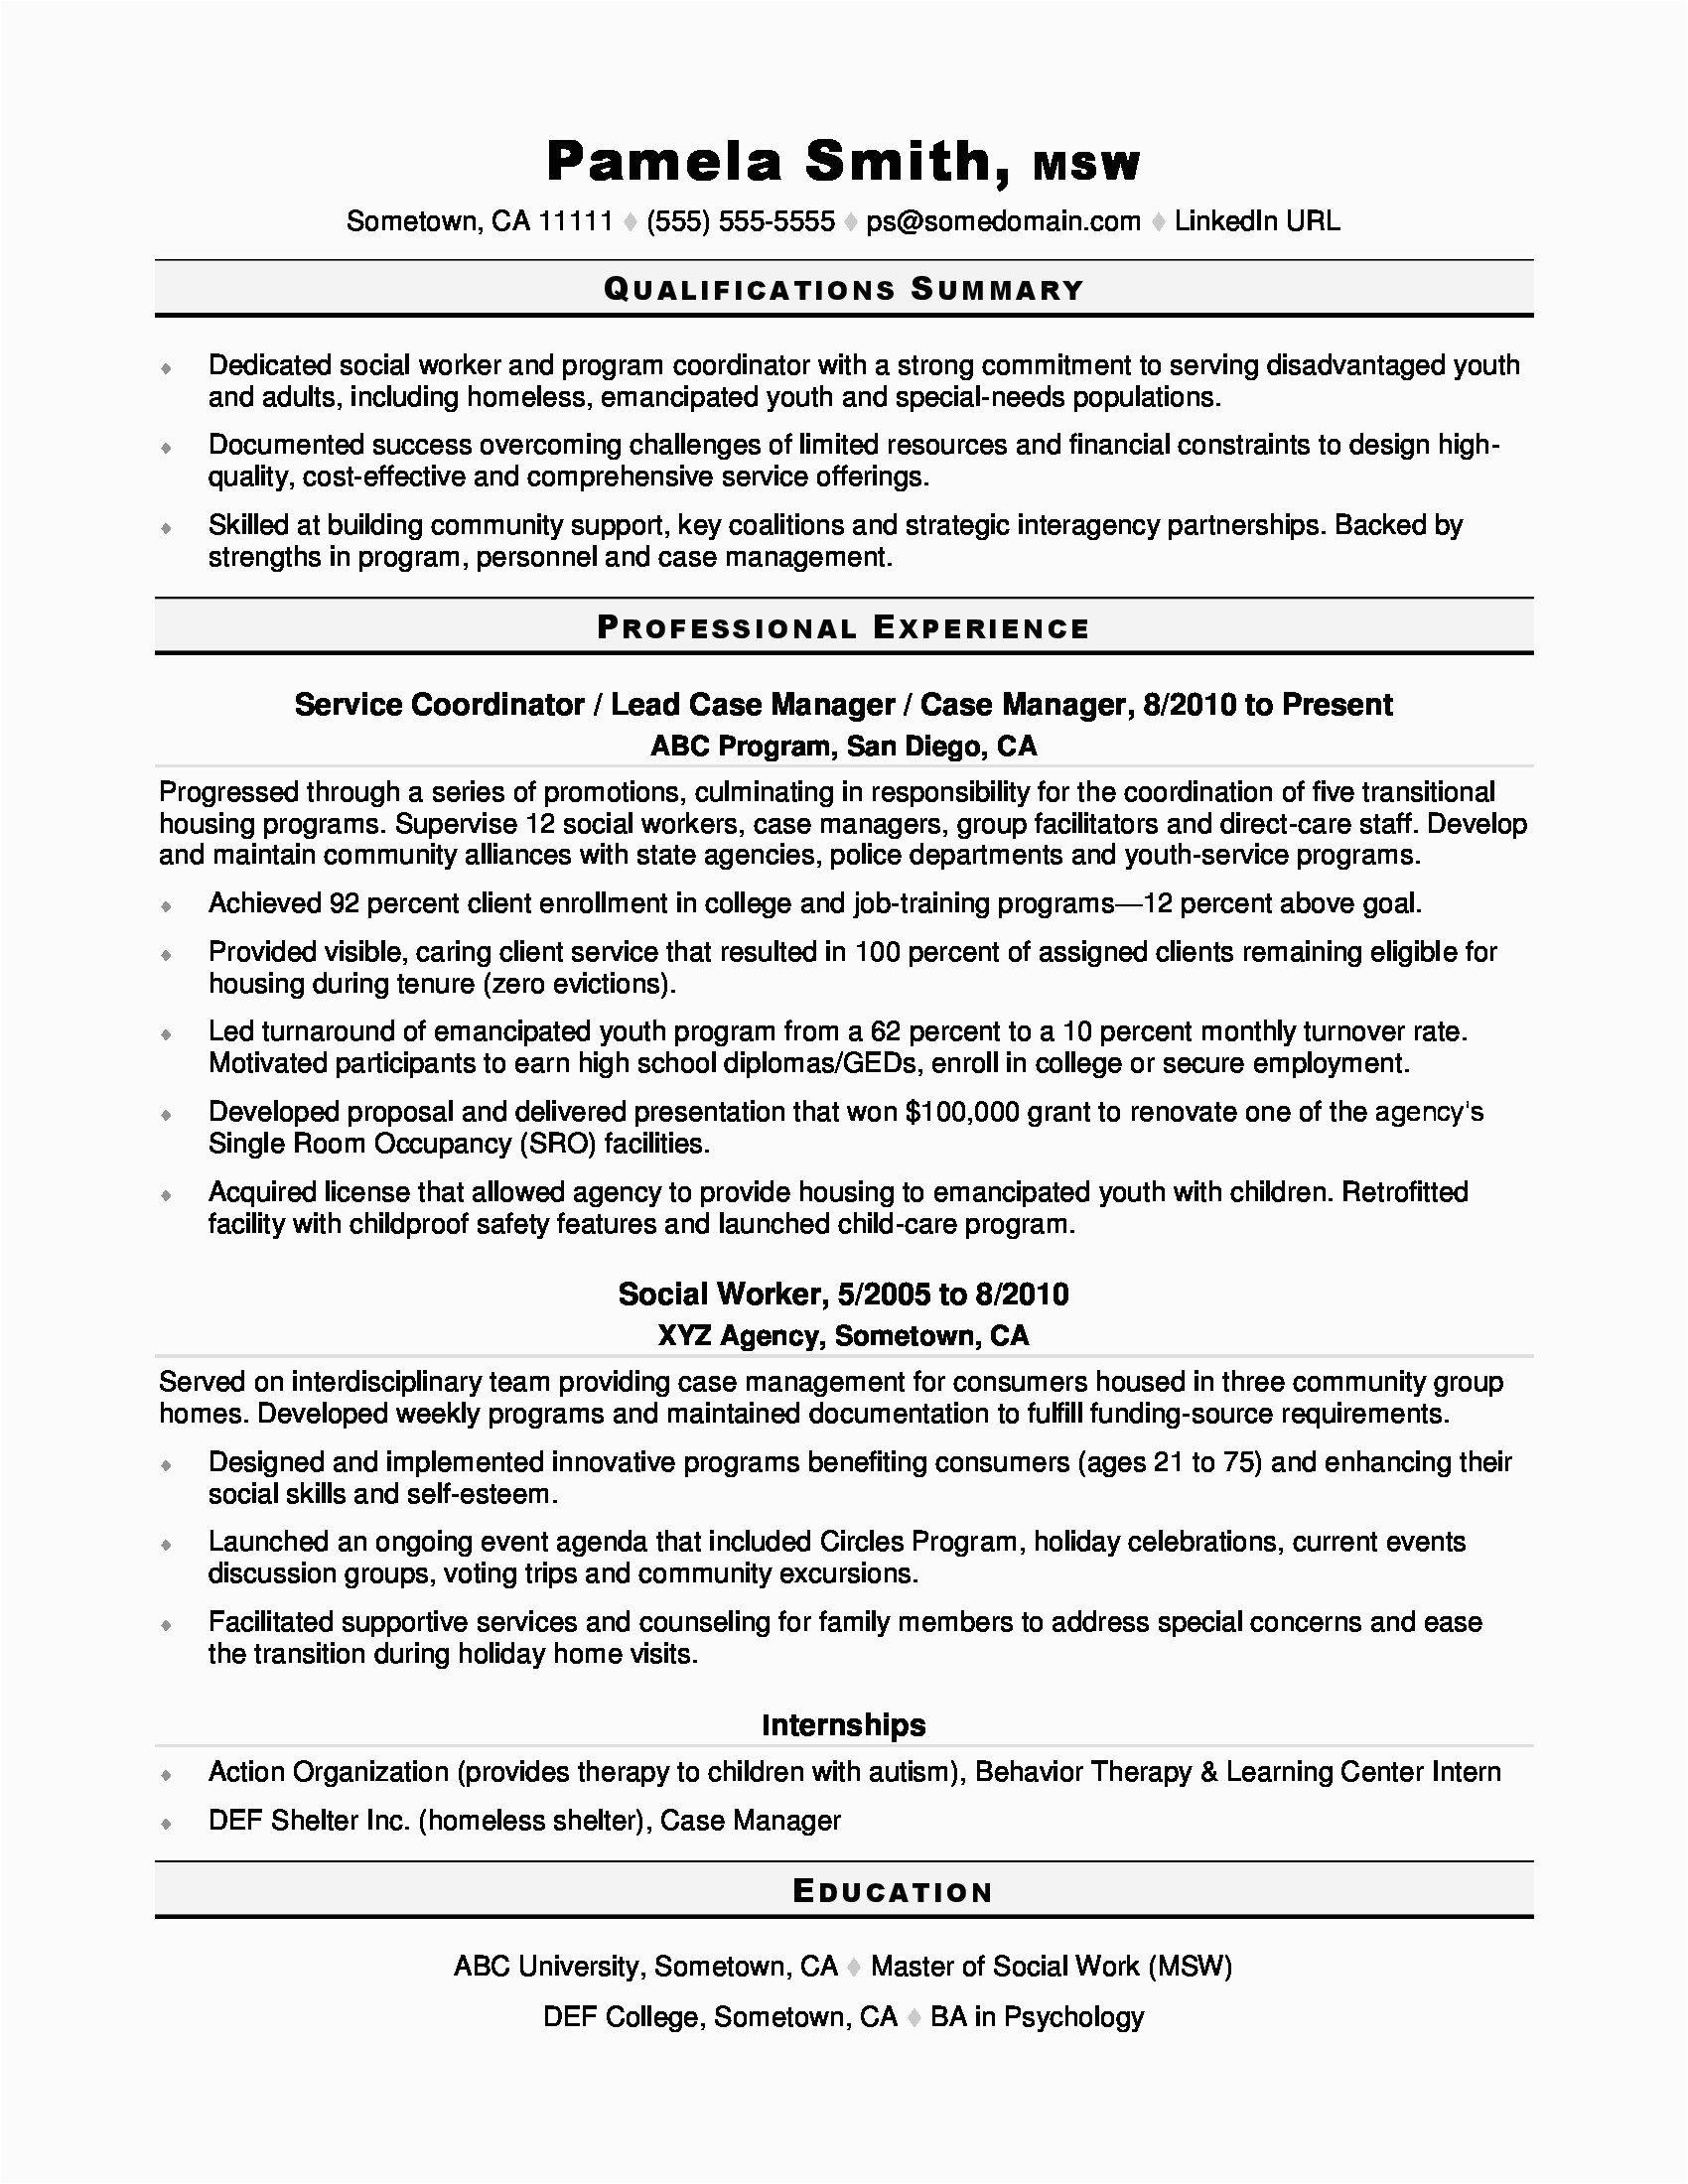 Sample Resume for Msw social Worker social Work Resume